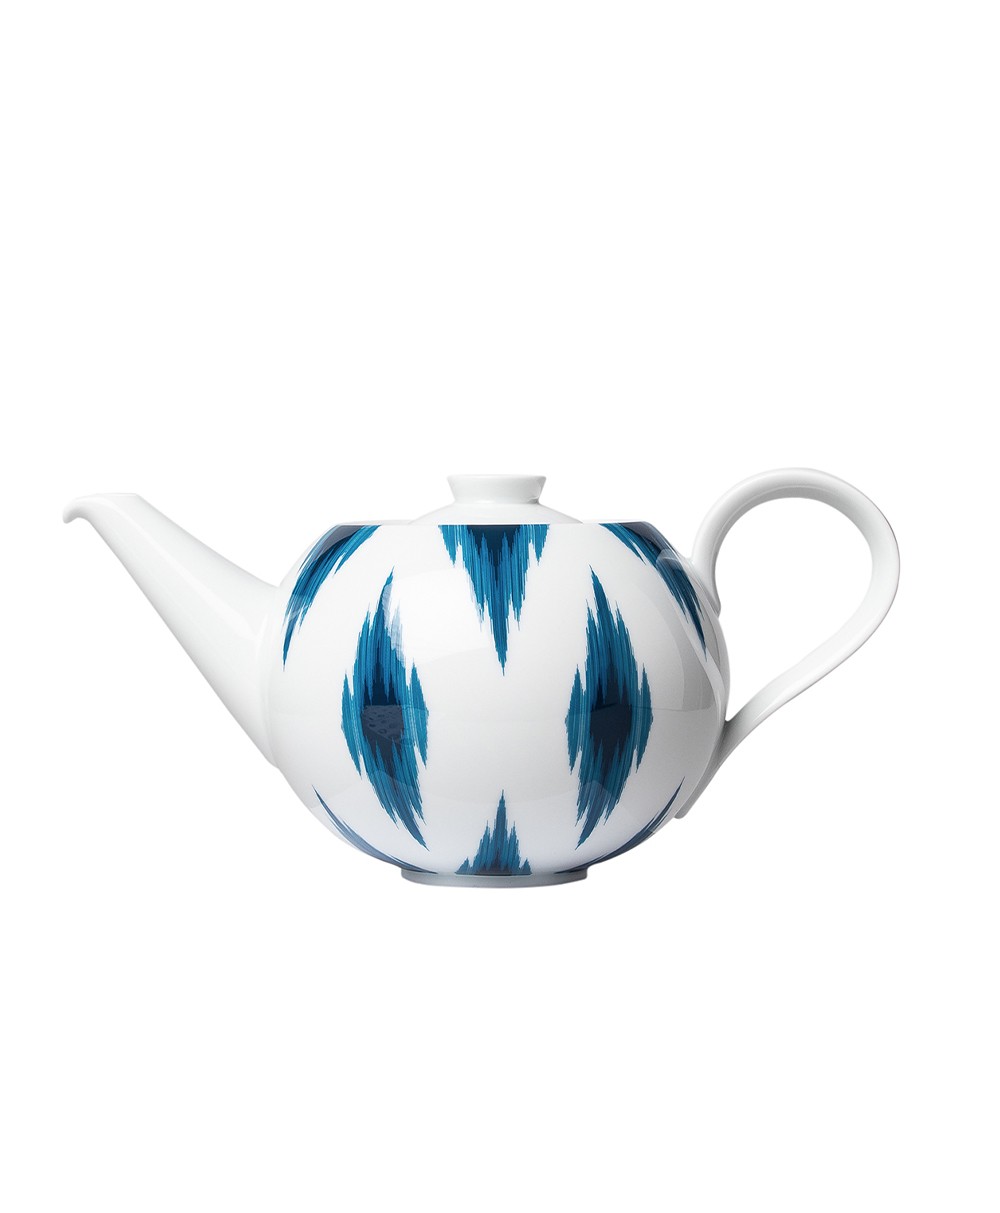 Produktbild, das die Teekanne der Paraiso-Serie von Sieger by Fürstenberg zeigt